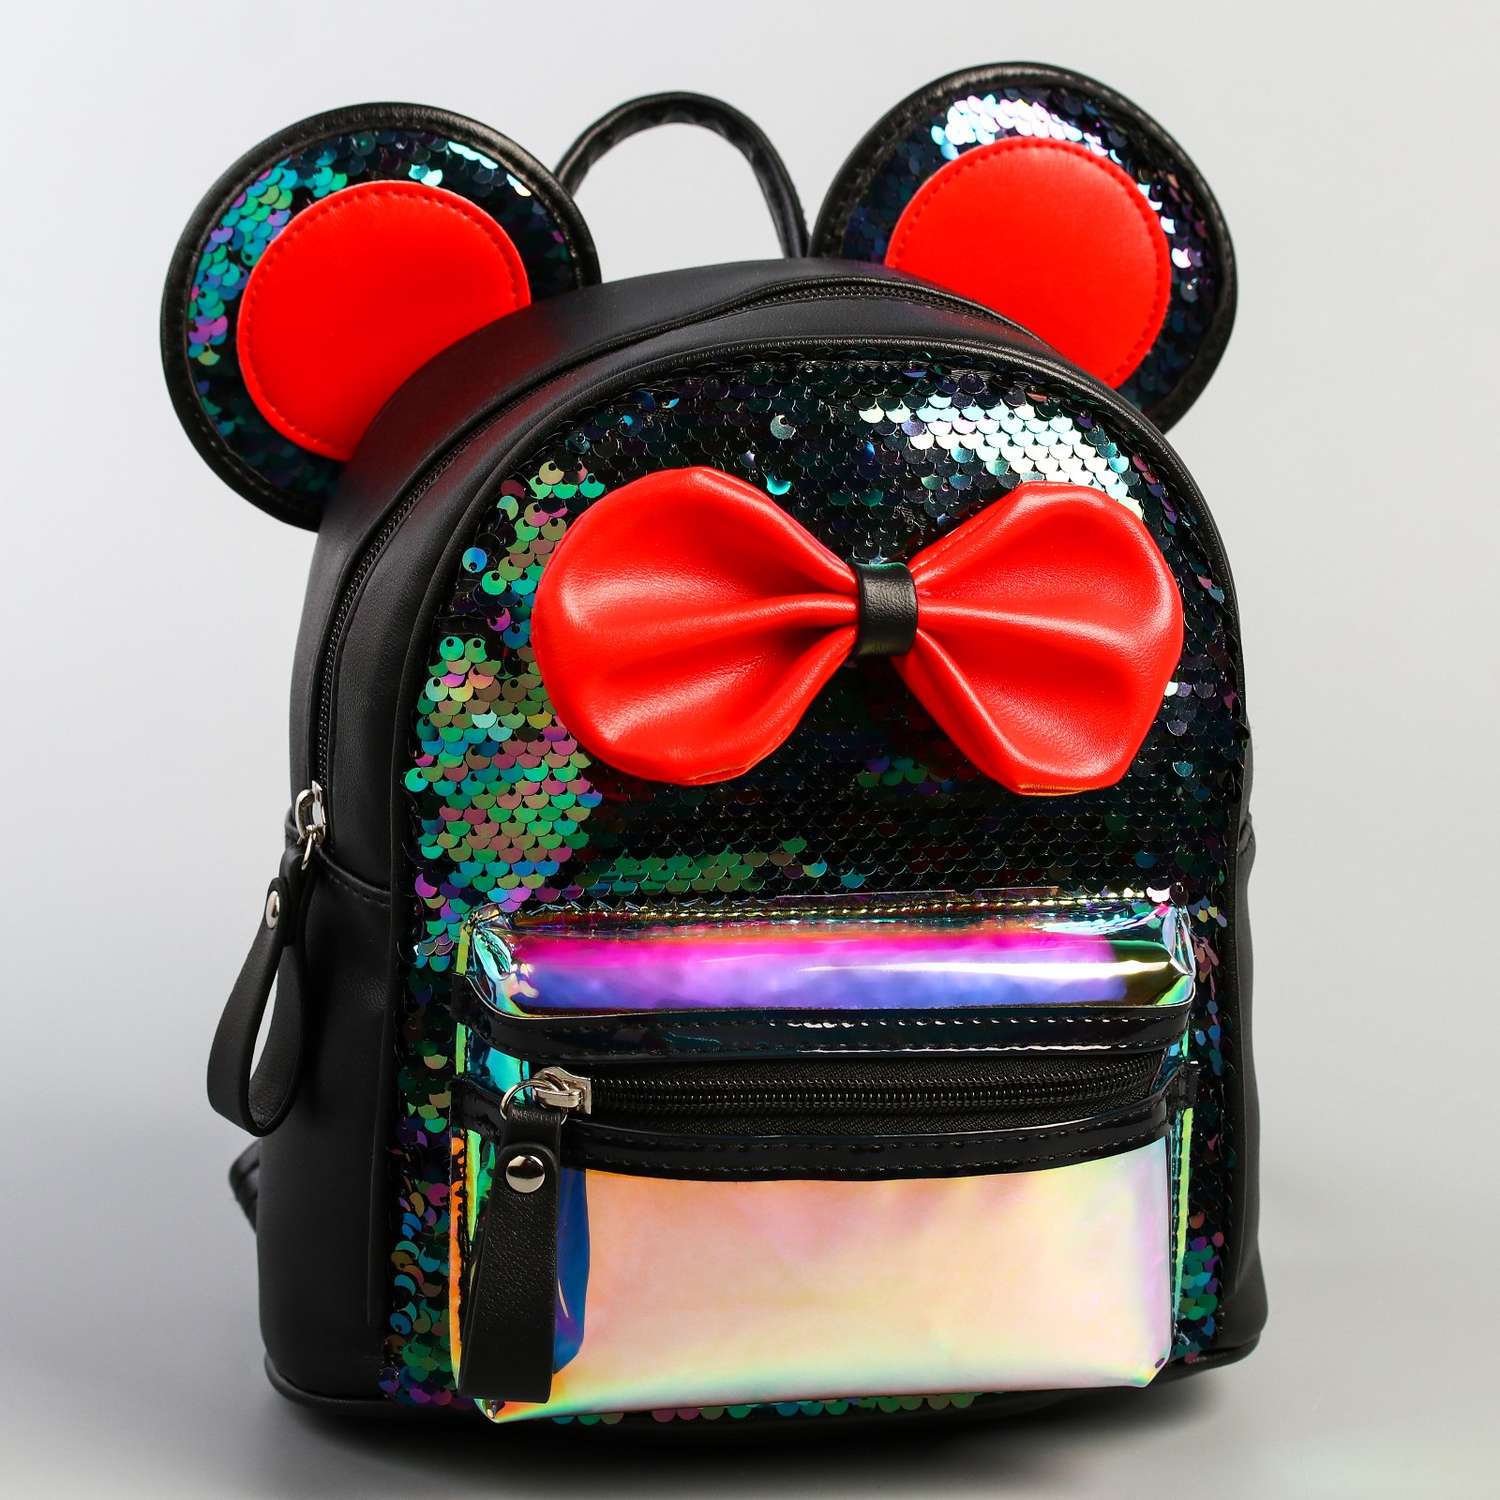 Рюкзак Disney детский Минни Маус - фото 1